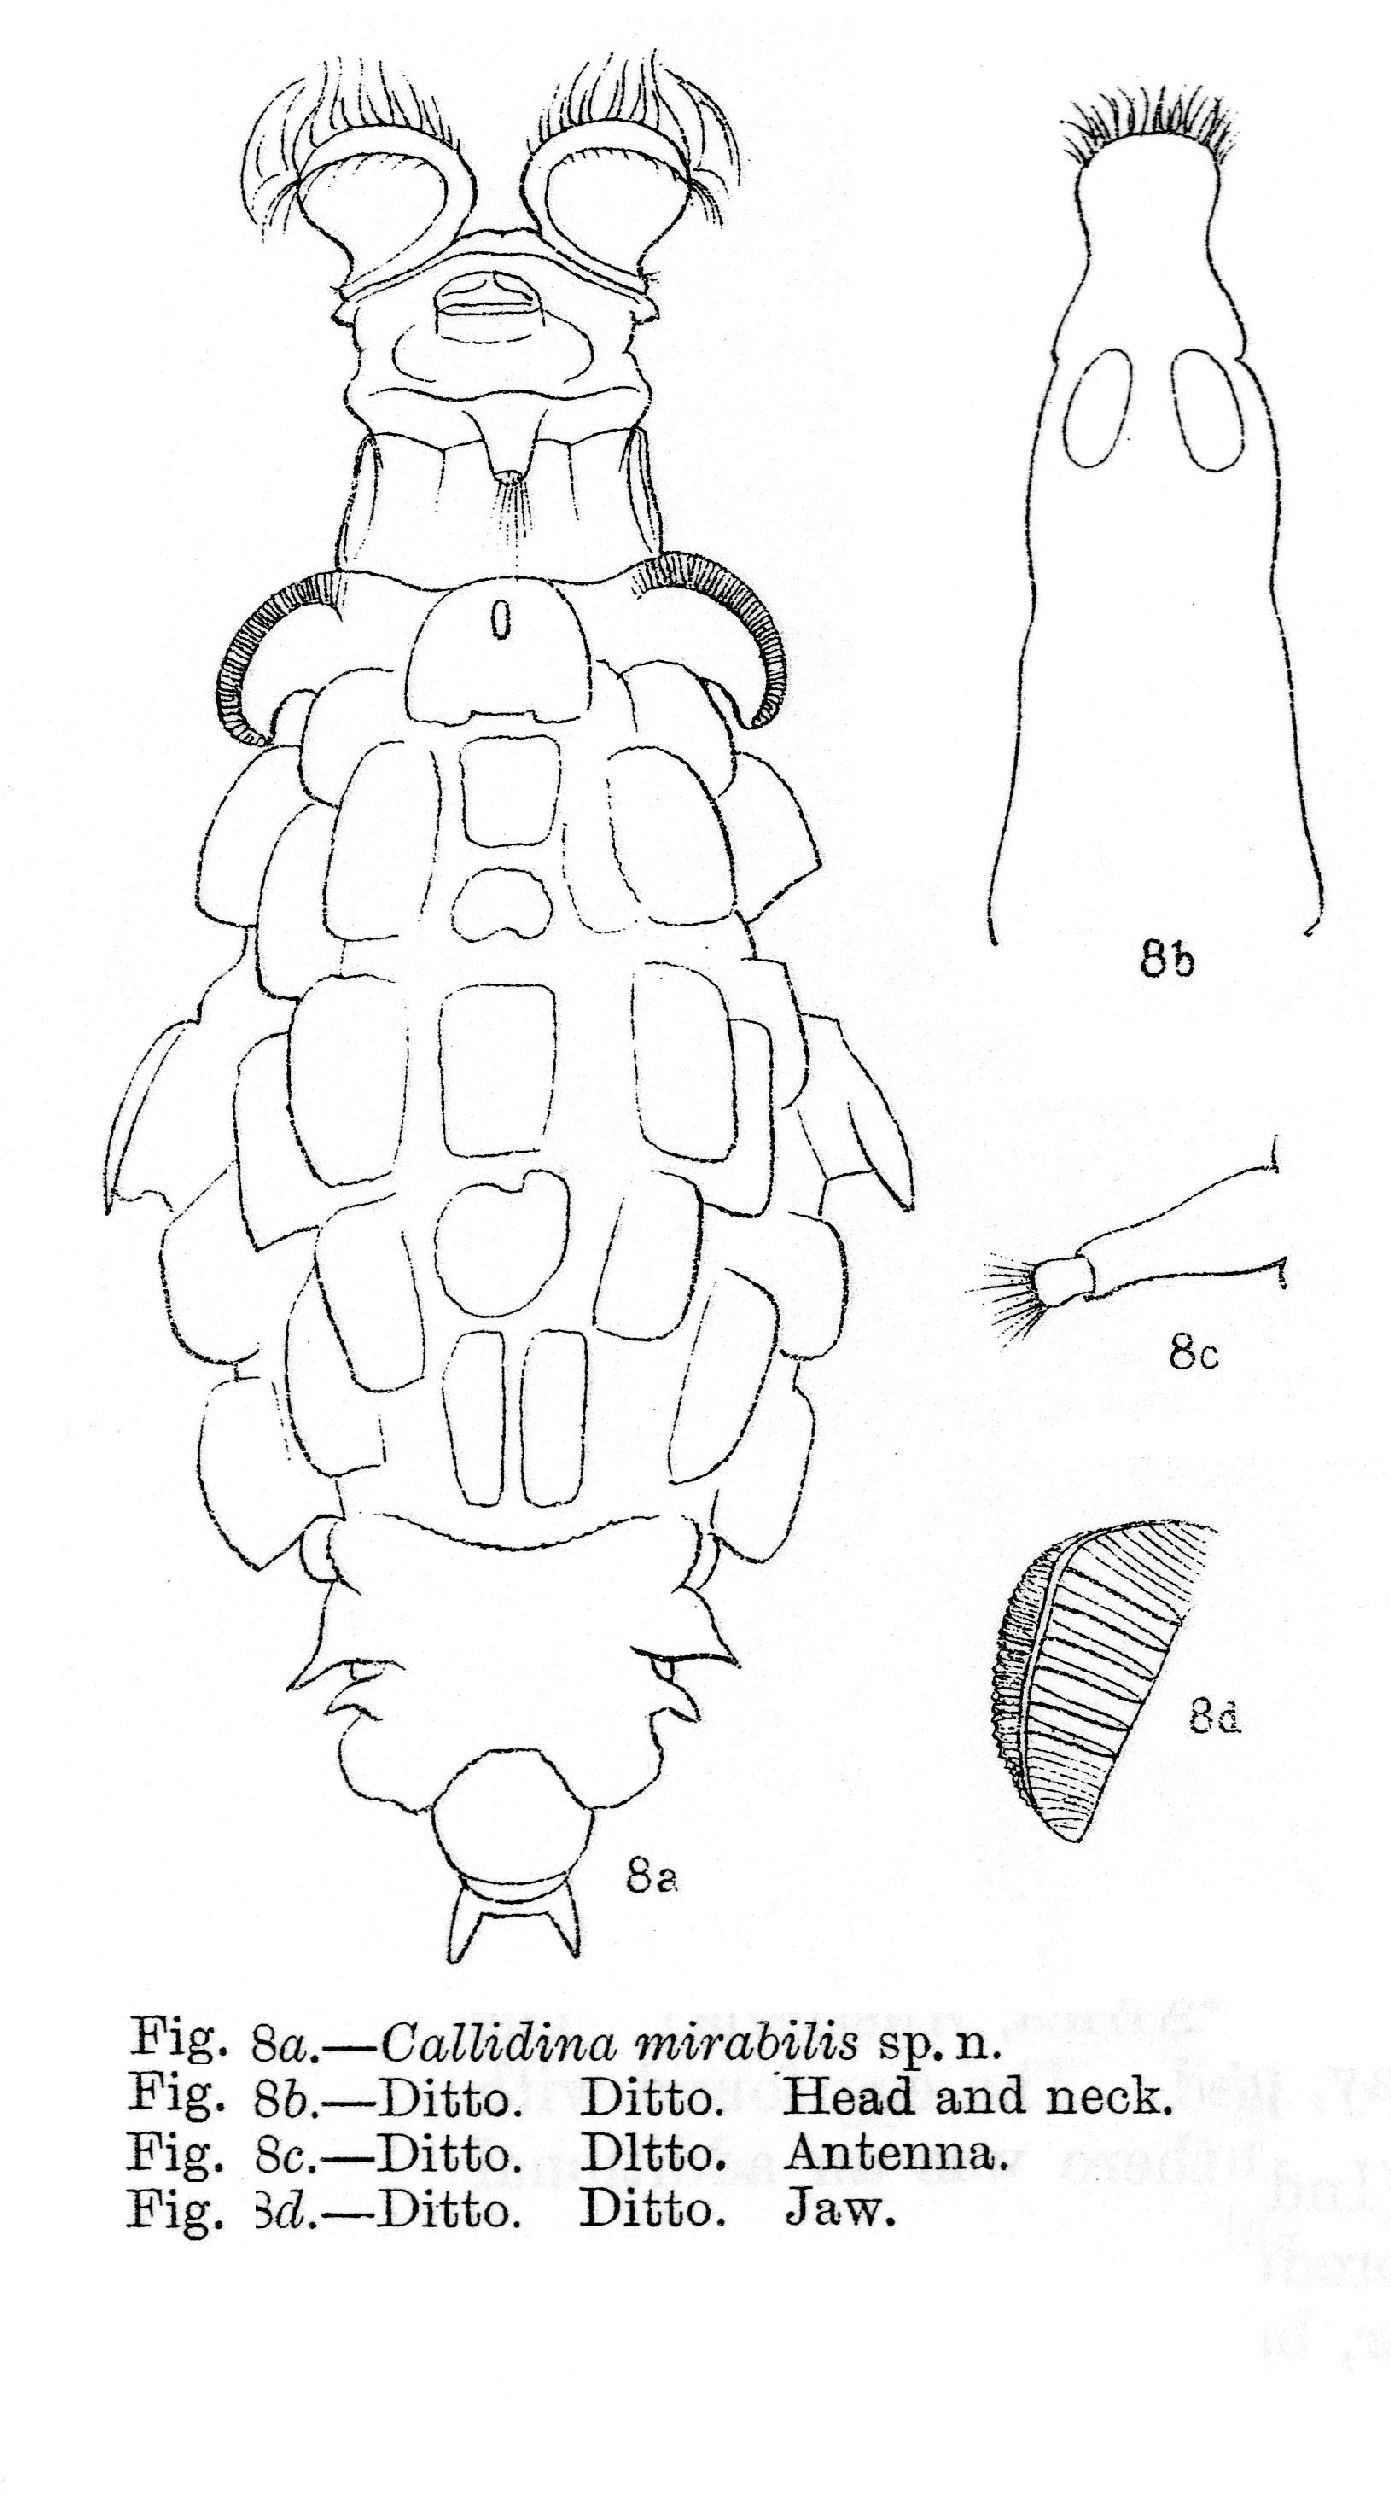 Image of Mniobia mirabilis (Murray 1911)